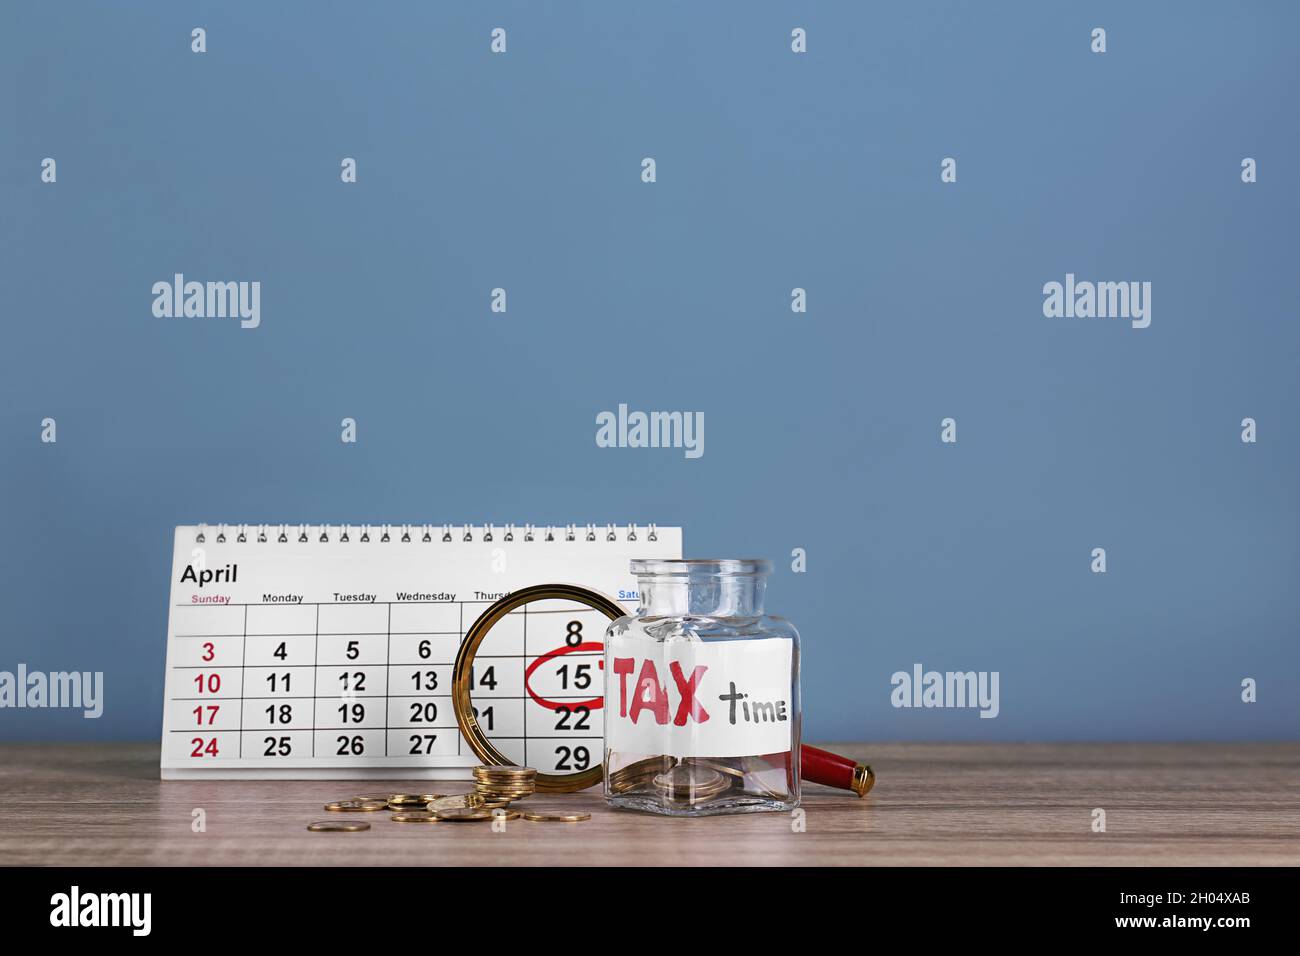 Kalender, Glas mit Etikett 'TAX TIME' und Münzen auf dem Tisch  Stockfotografie - Alamy